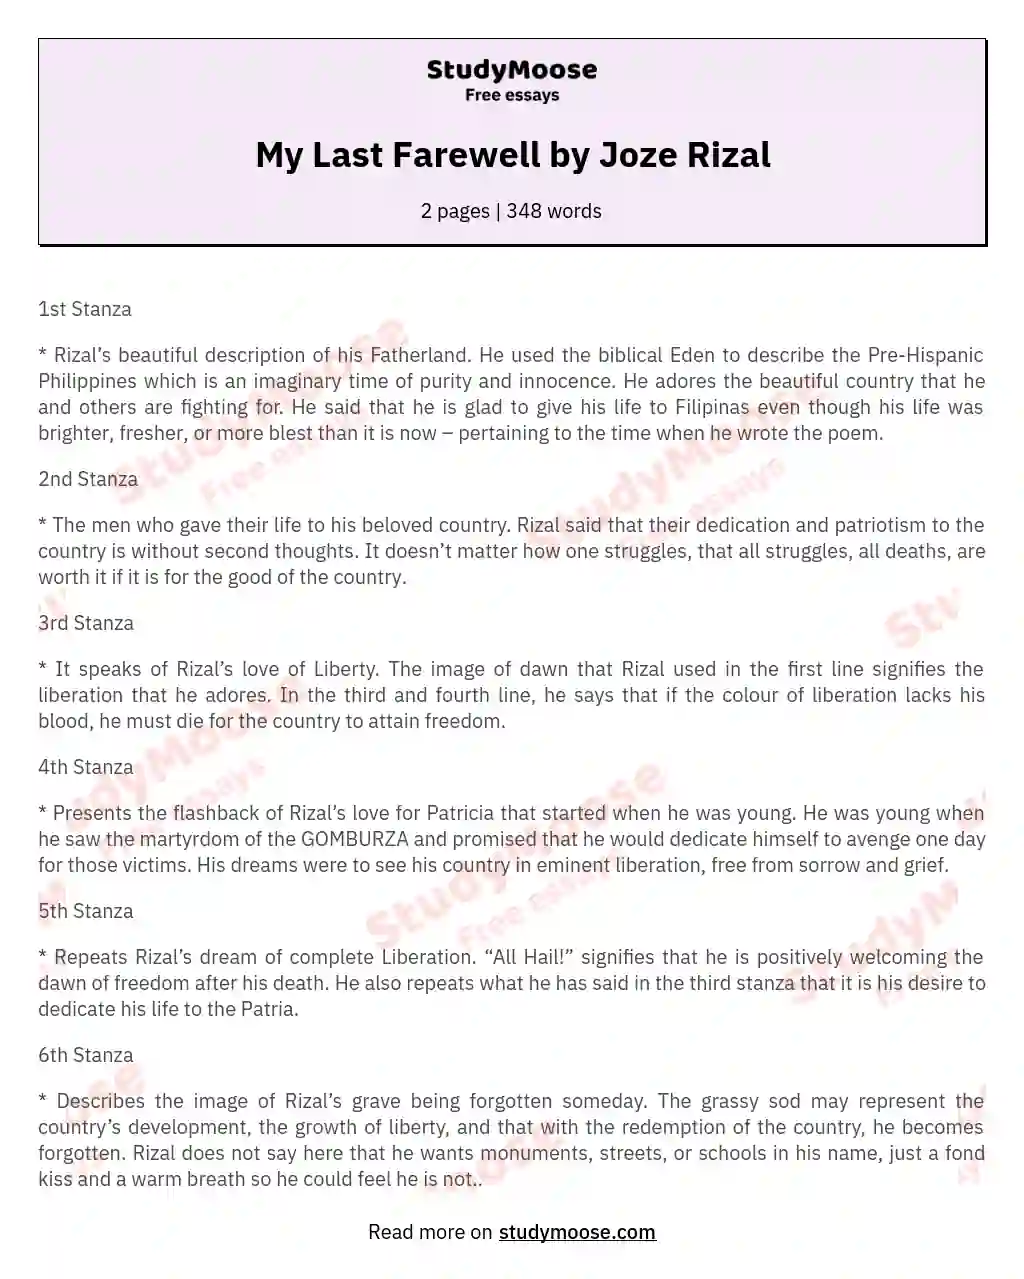 My Last Farewell by Joze Rizal essay